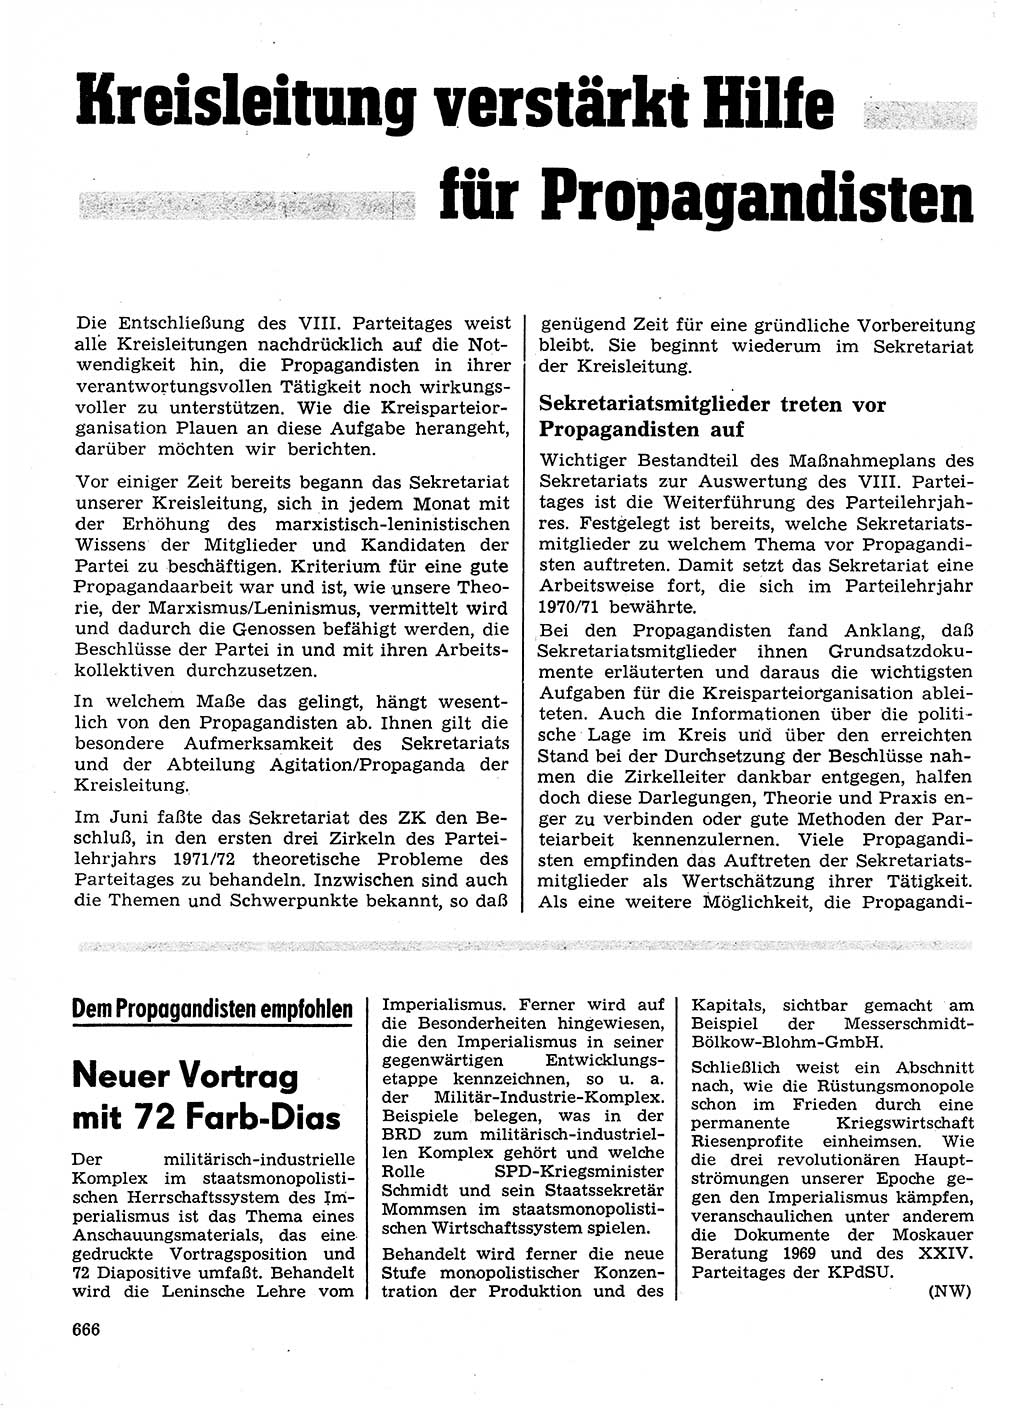 Neuer Weg (NW), Organ des Zentralkomitees (ZK) der SED (Sozialistische Einheitspartei Deutschlands) für Fragen des Parteilebens, 26. Jahrgang [Deutsche Demokratische Republik (DDR)] 1971, Seite 666 (NW ZK SED DDR 1971, S. 666)